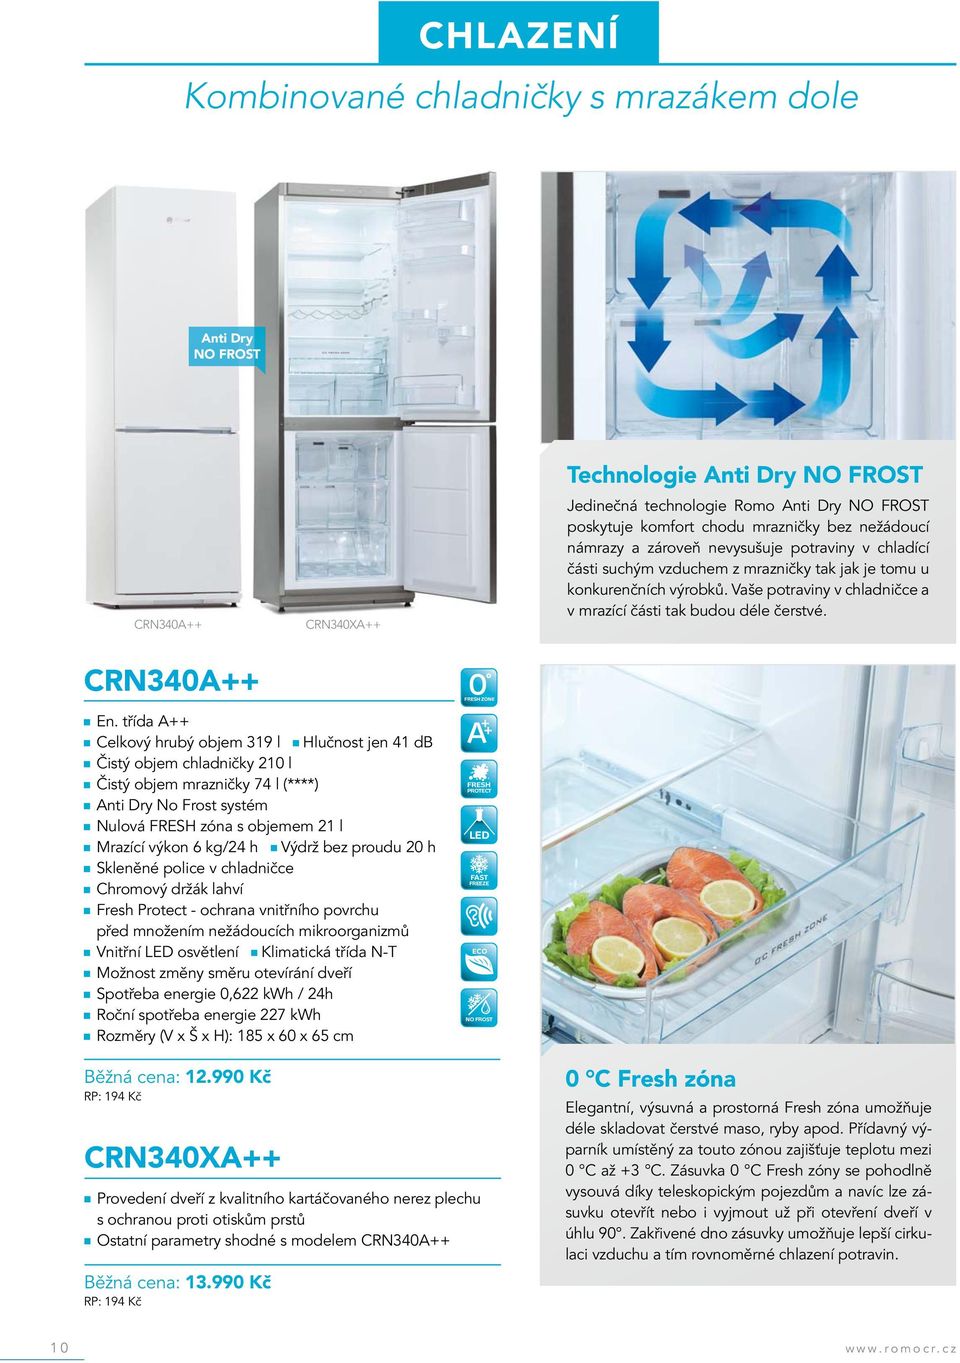 Vaše potraviny v chladničce a v mrazící části tak budou déle čerstvé. CRN340A++ En.